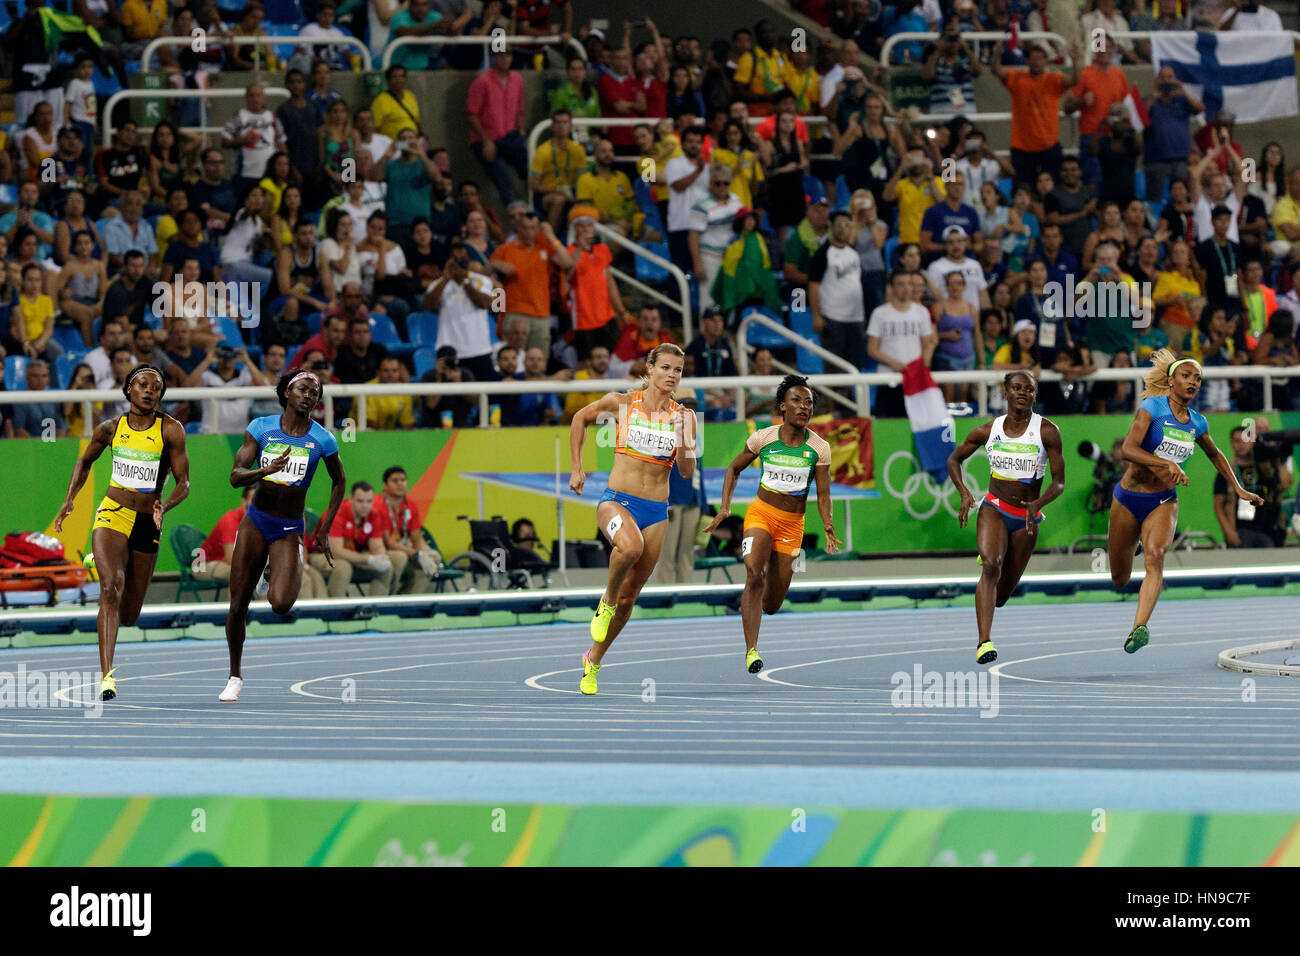 Rio de Janeiro, Brésil. 17 août 2016. L'athlétisme, le 200m femmes finale au Jeux Olympiques d'été 2016. ©PAUL J. Sutton/PCN la photographie. Banque D'Images